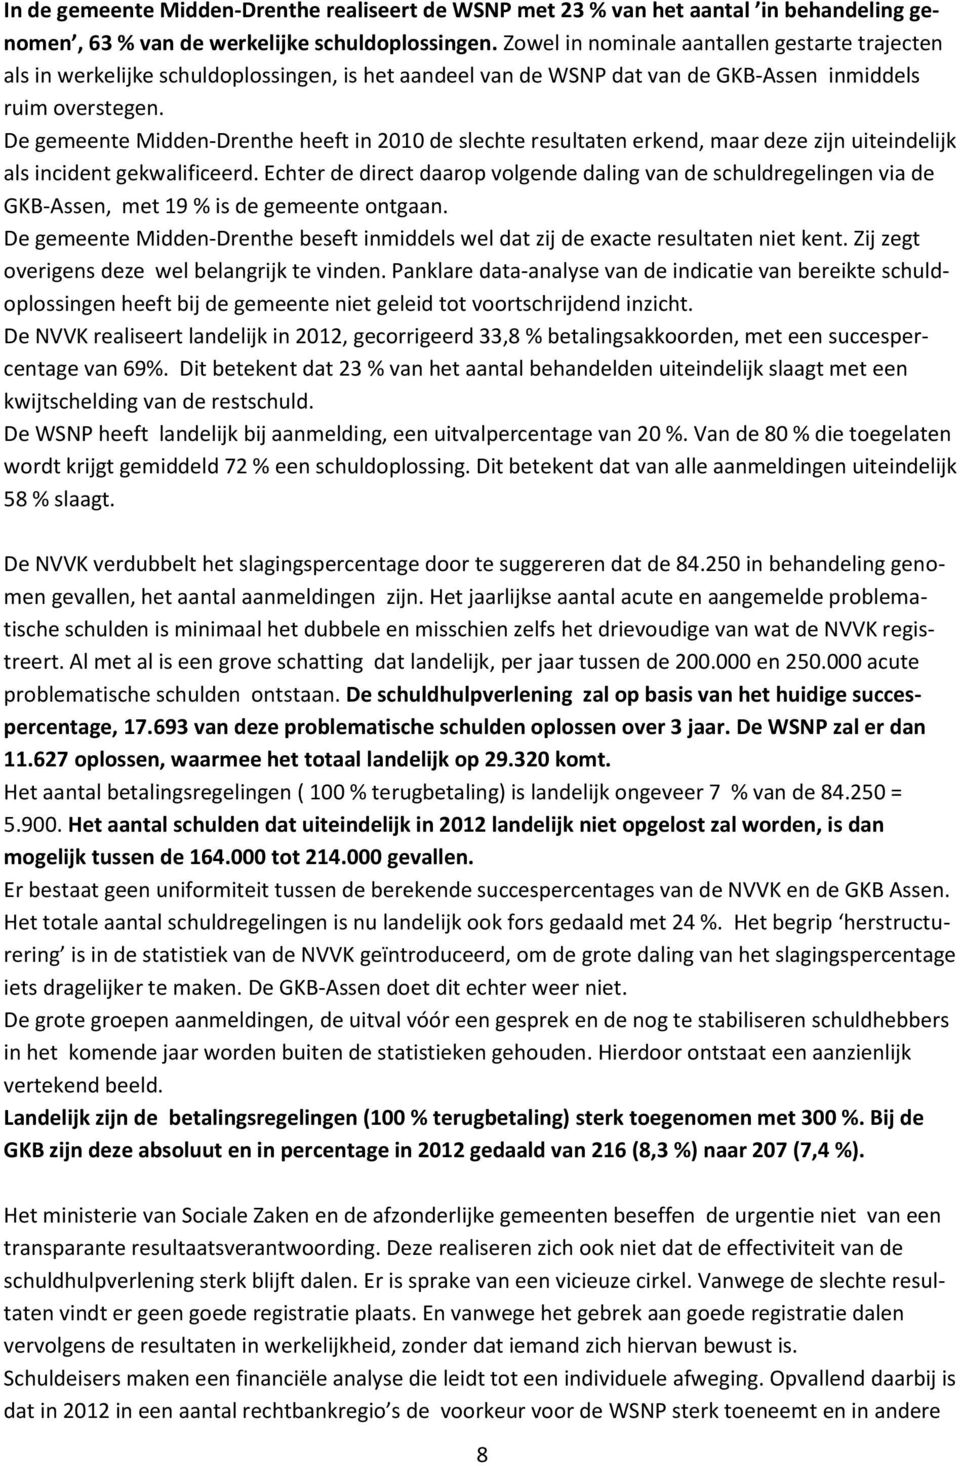 De gemeente Midden-Drenthe heeft in 2010 de slechte resultaten erkend, maar deze zijn uiteindelijk als incident gekwalificeerd.